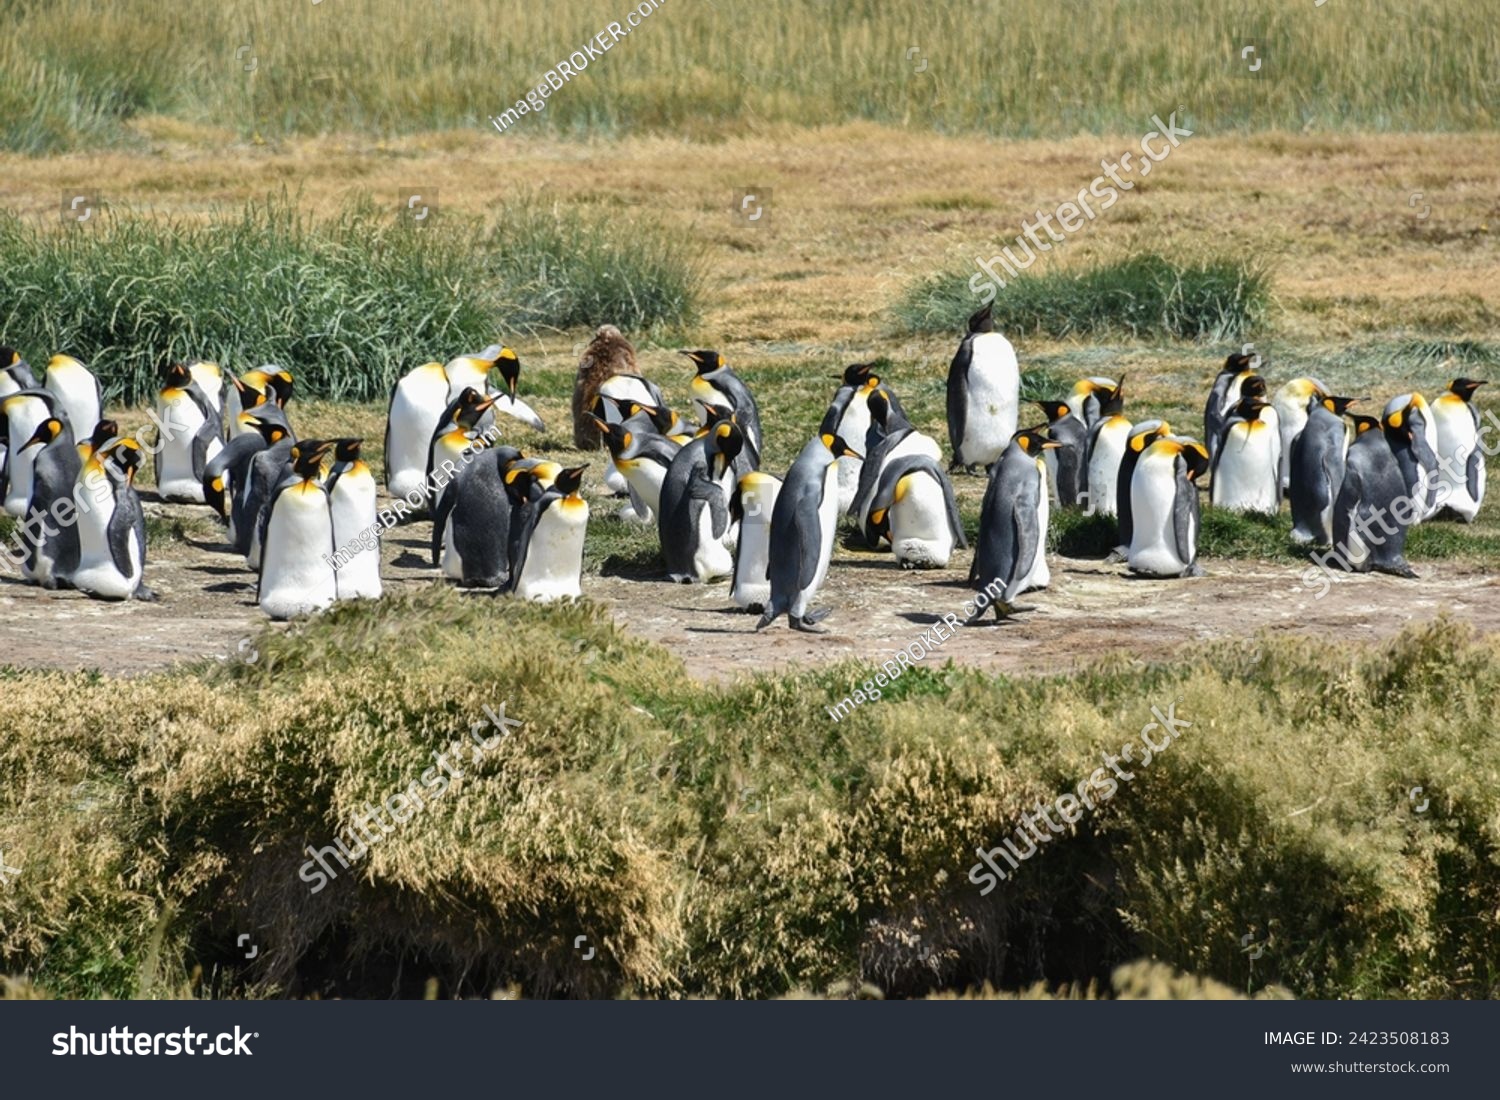 King penguins (Aptenodytes patagonicus), colony at Bahia Inutil, Parque Pingüino Rey, Porvenir, Province Tierra del Fuego, Tierra del Fuego, Chile #2423508183